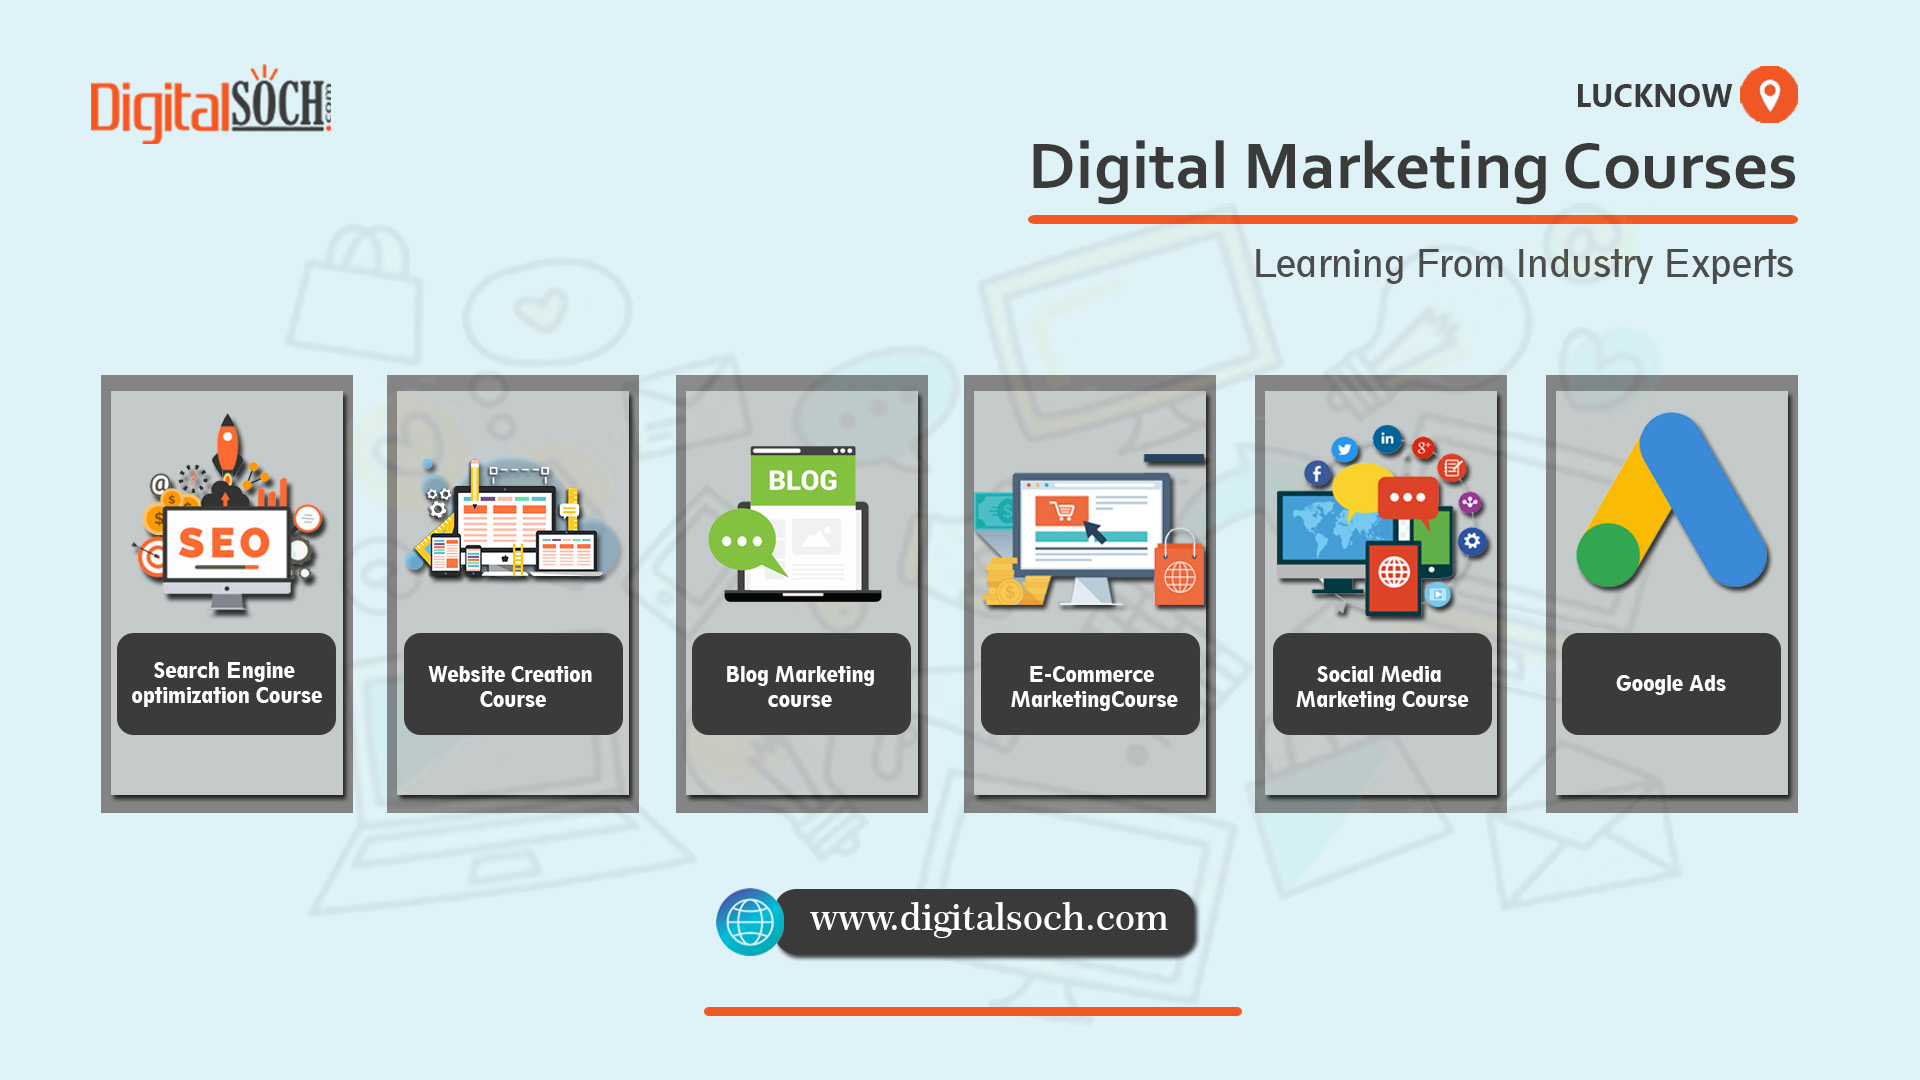 Digital Marketing Course Lucknow-Digital Marketing Training Lucknow-Digital Marketing Classes Lucknow-Digital Soch